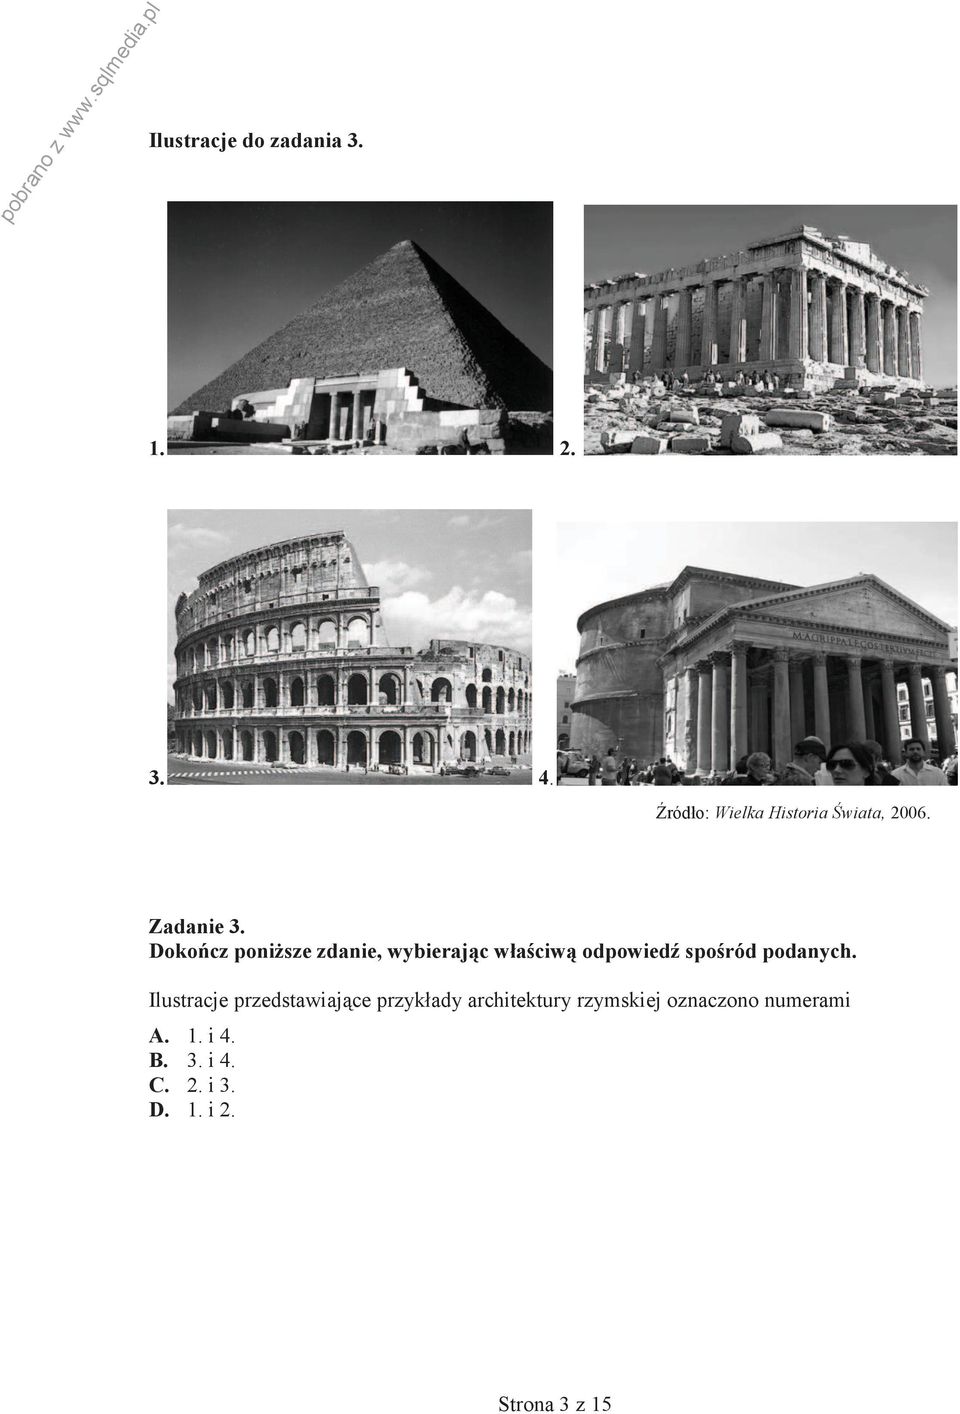 Ilustracje przedstawiające przykłady architektury